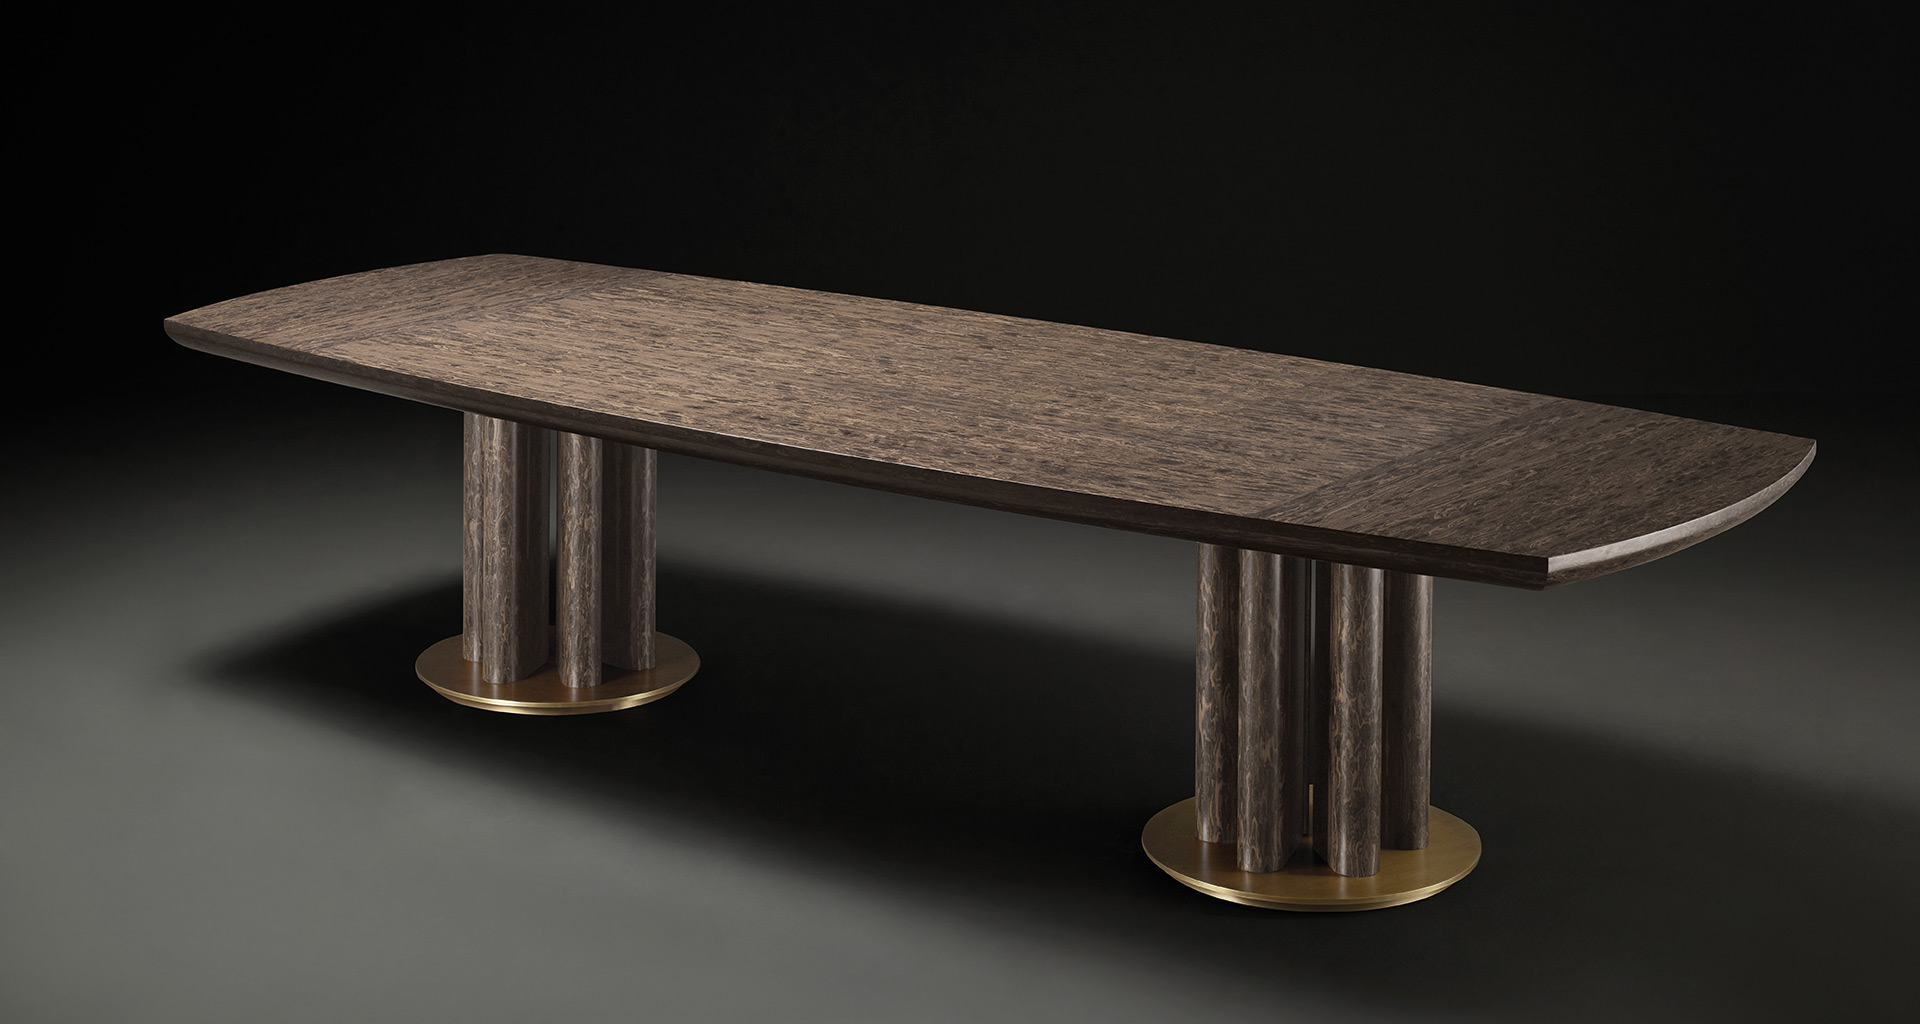 Orazio è un tavolo da pranzo in legno e bronzo della collezione Amaranthine Tales di Promemoria | Promemoria